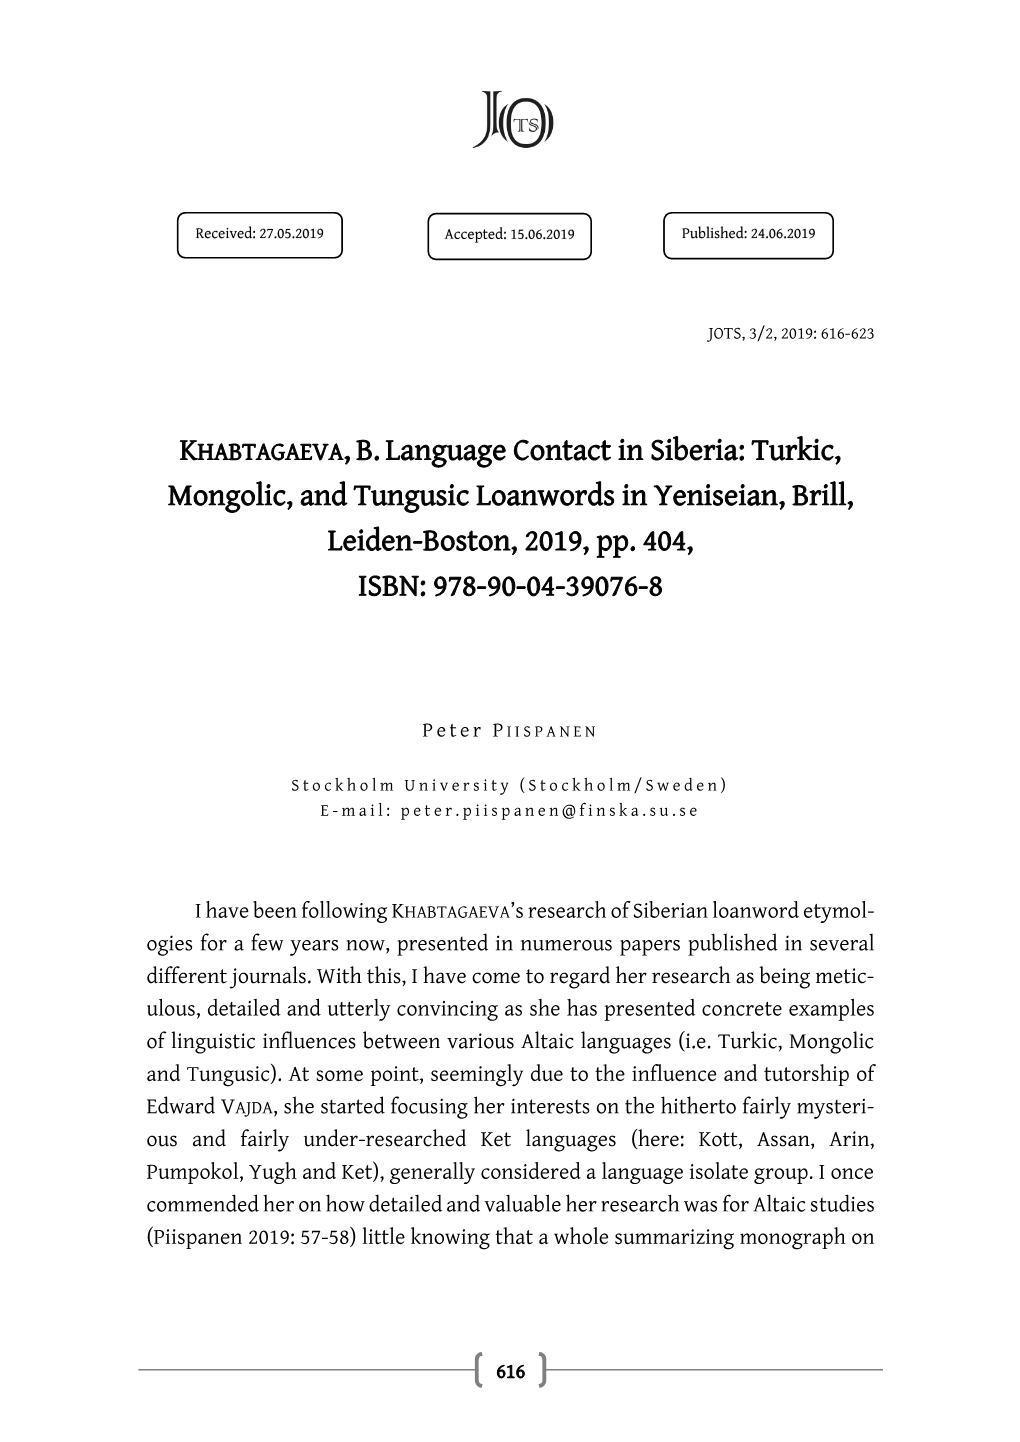 KHABTAGAEVA,B.Language Contact in Siberia: Turkic, Mongolic, And